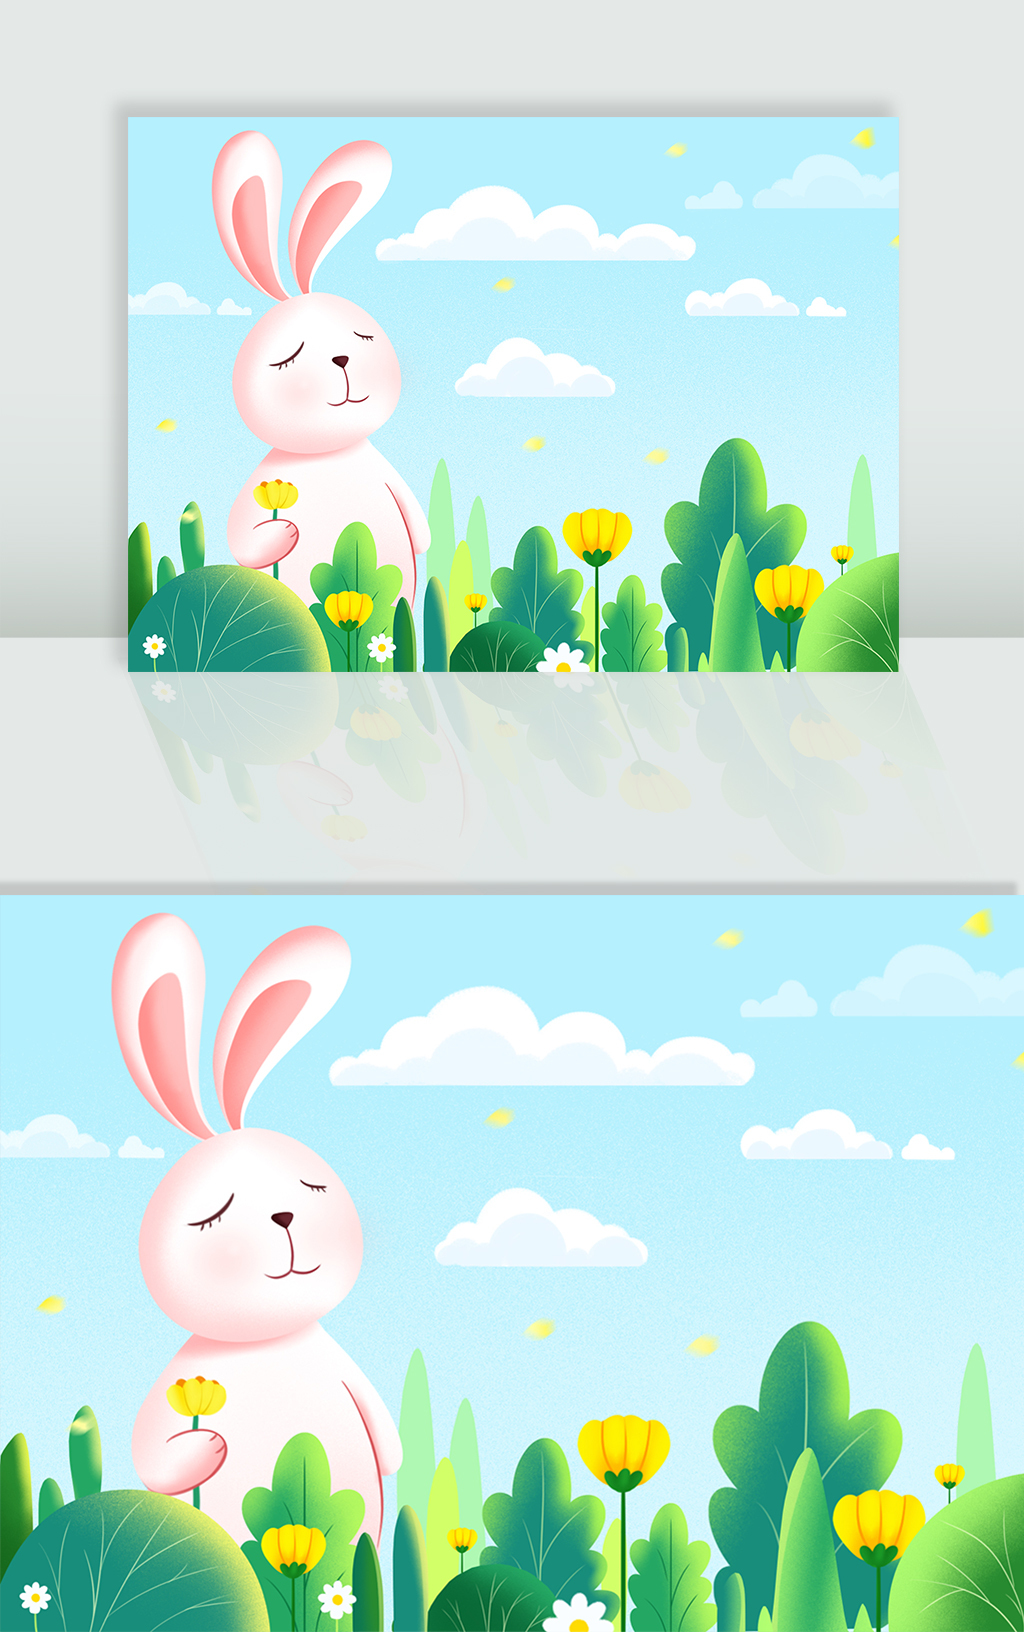 卡通兔子和花草植物插画背景 